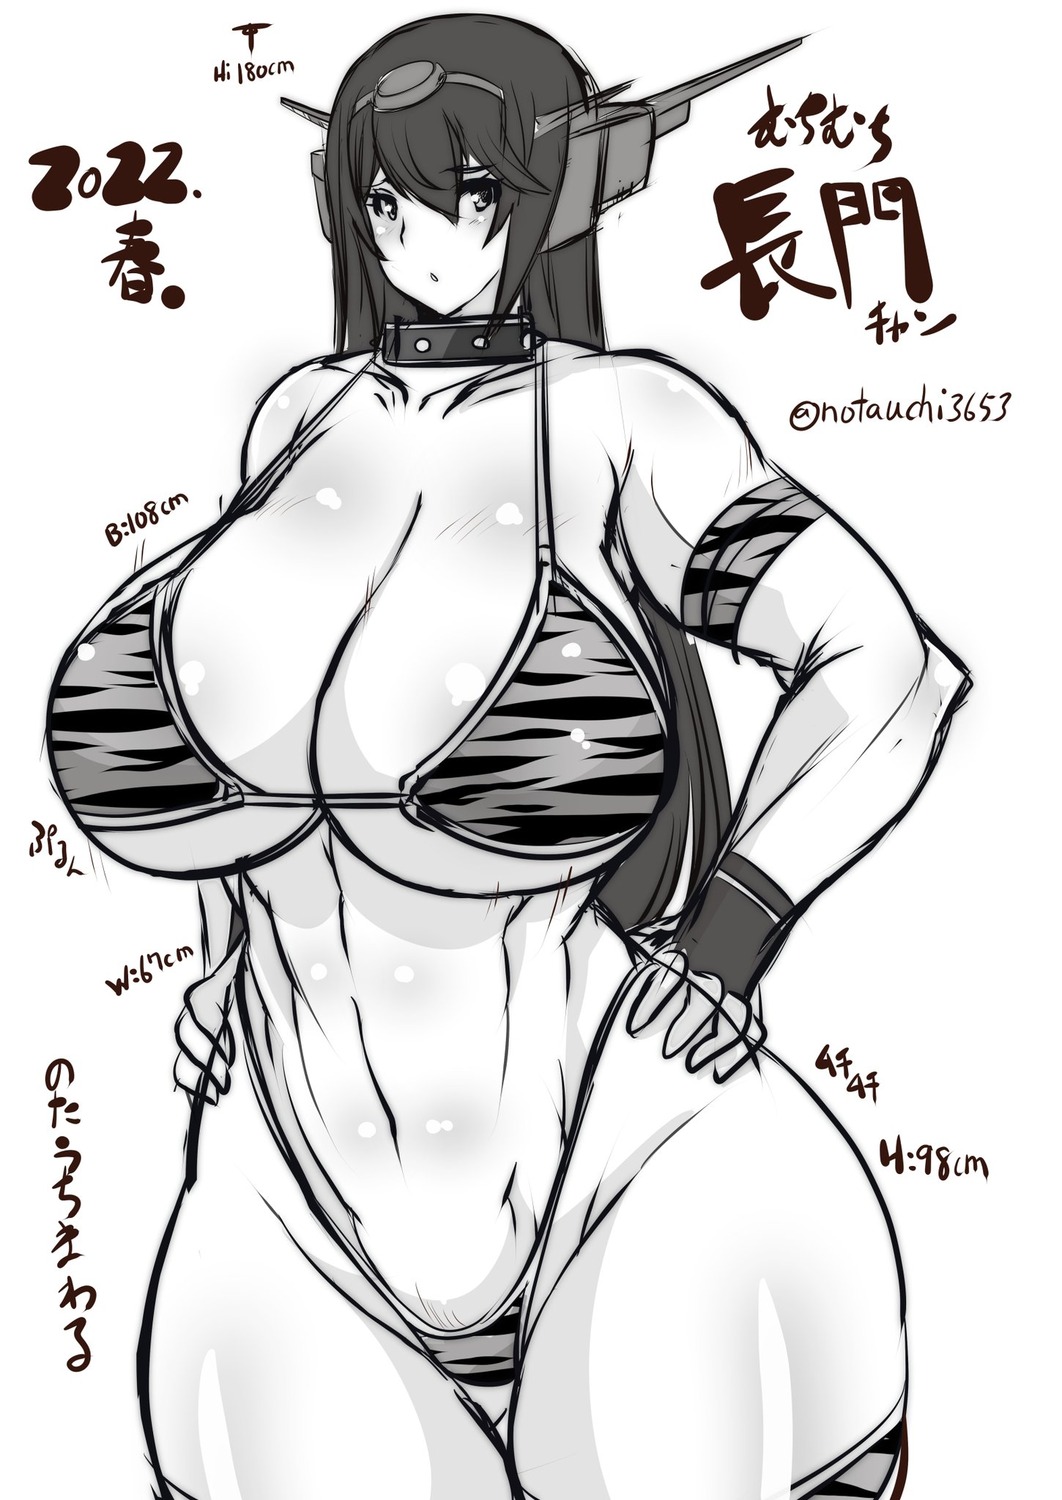 bikini kantai_collection monochrome nagato_(kancolle) notauchi_mawaru_ni-shiki sketch swimsuits thighhighs